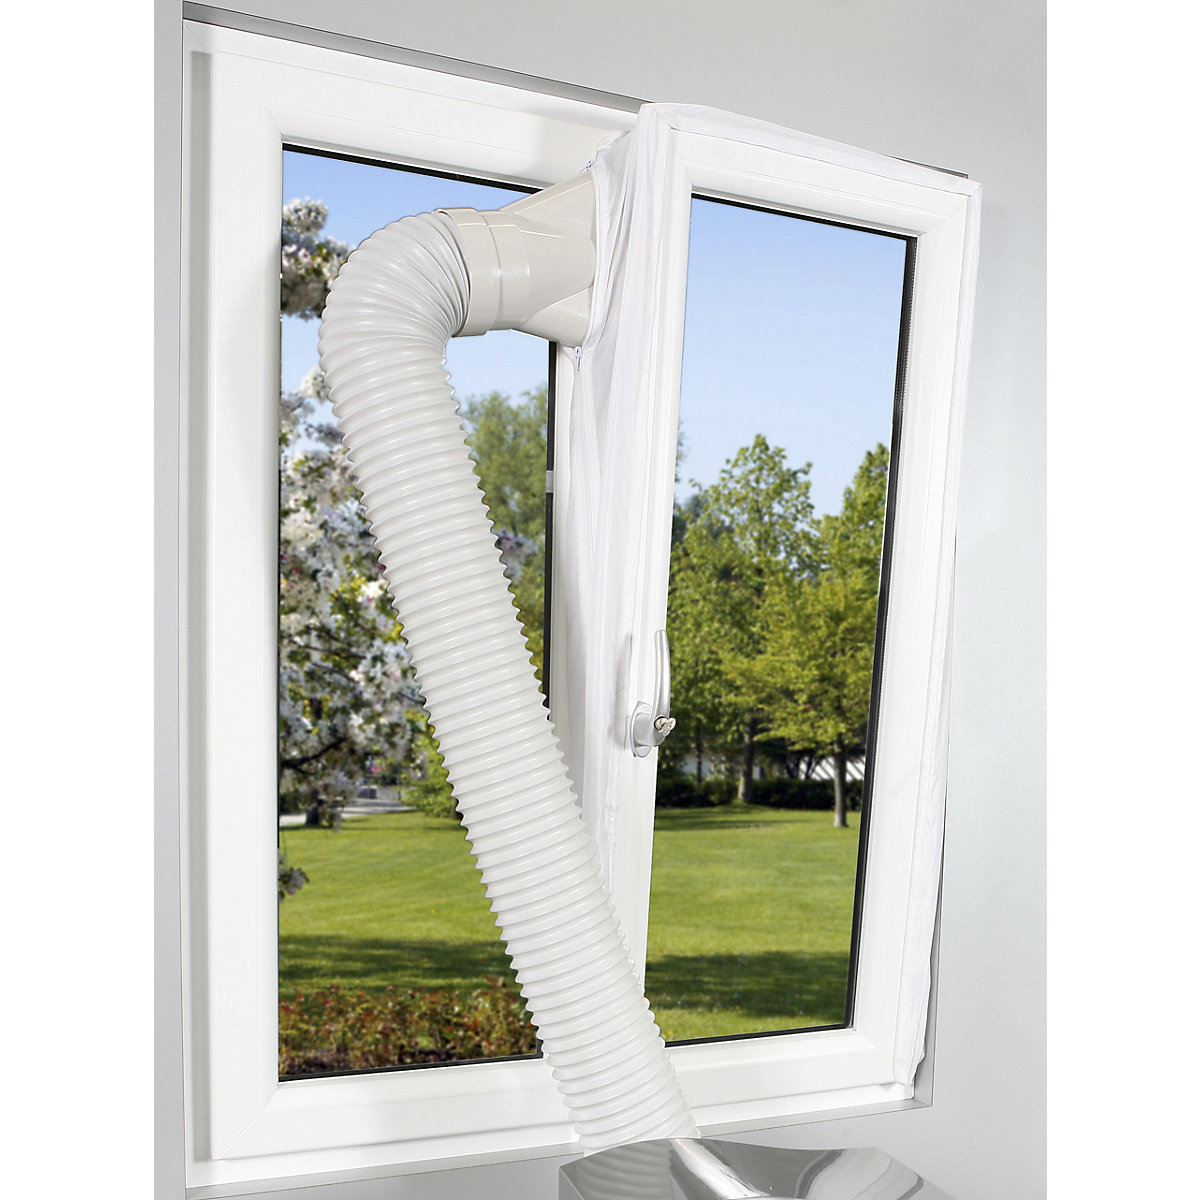 Guarnizione per finestra per climatizzatori: per climatizzatori